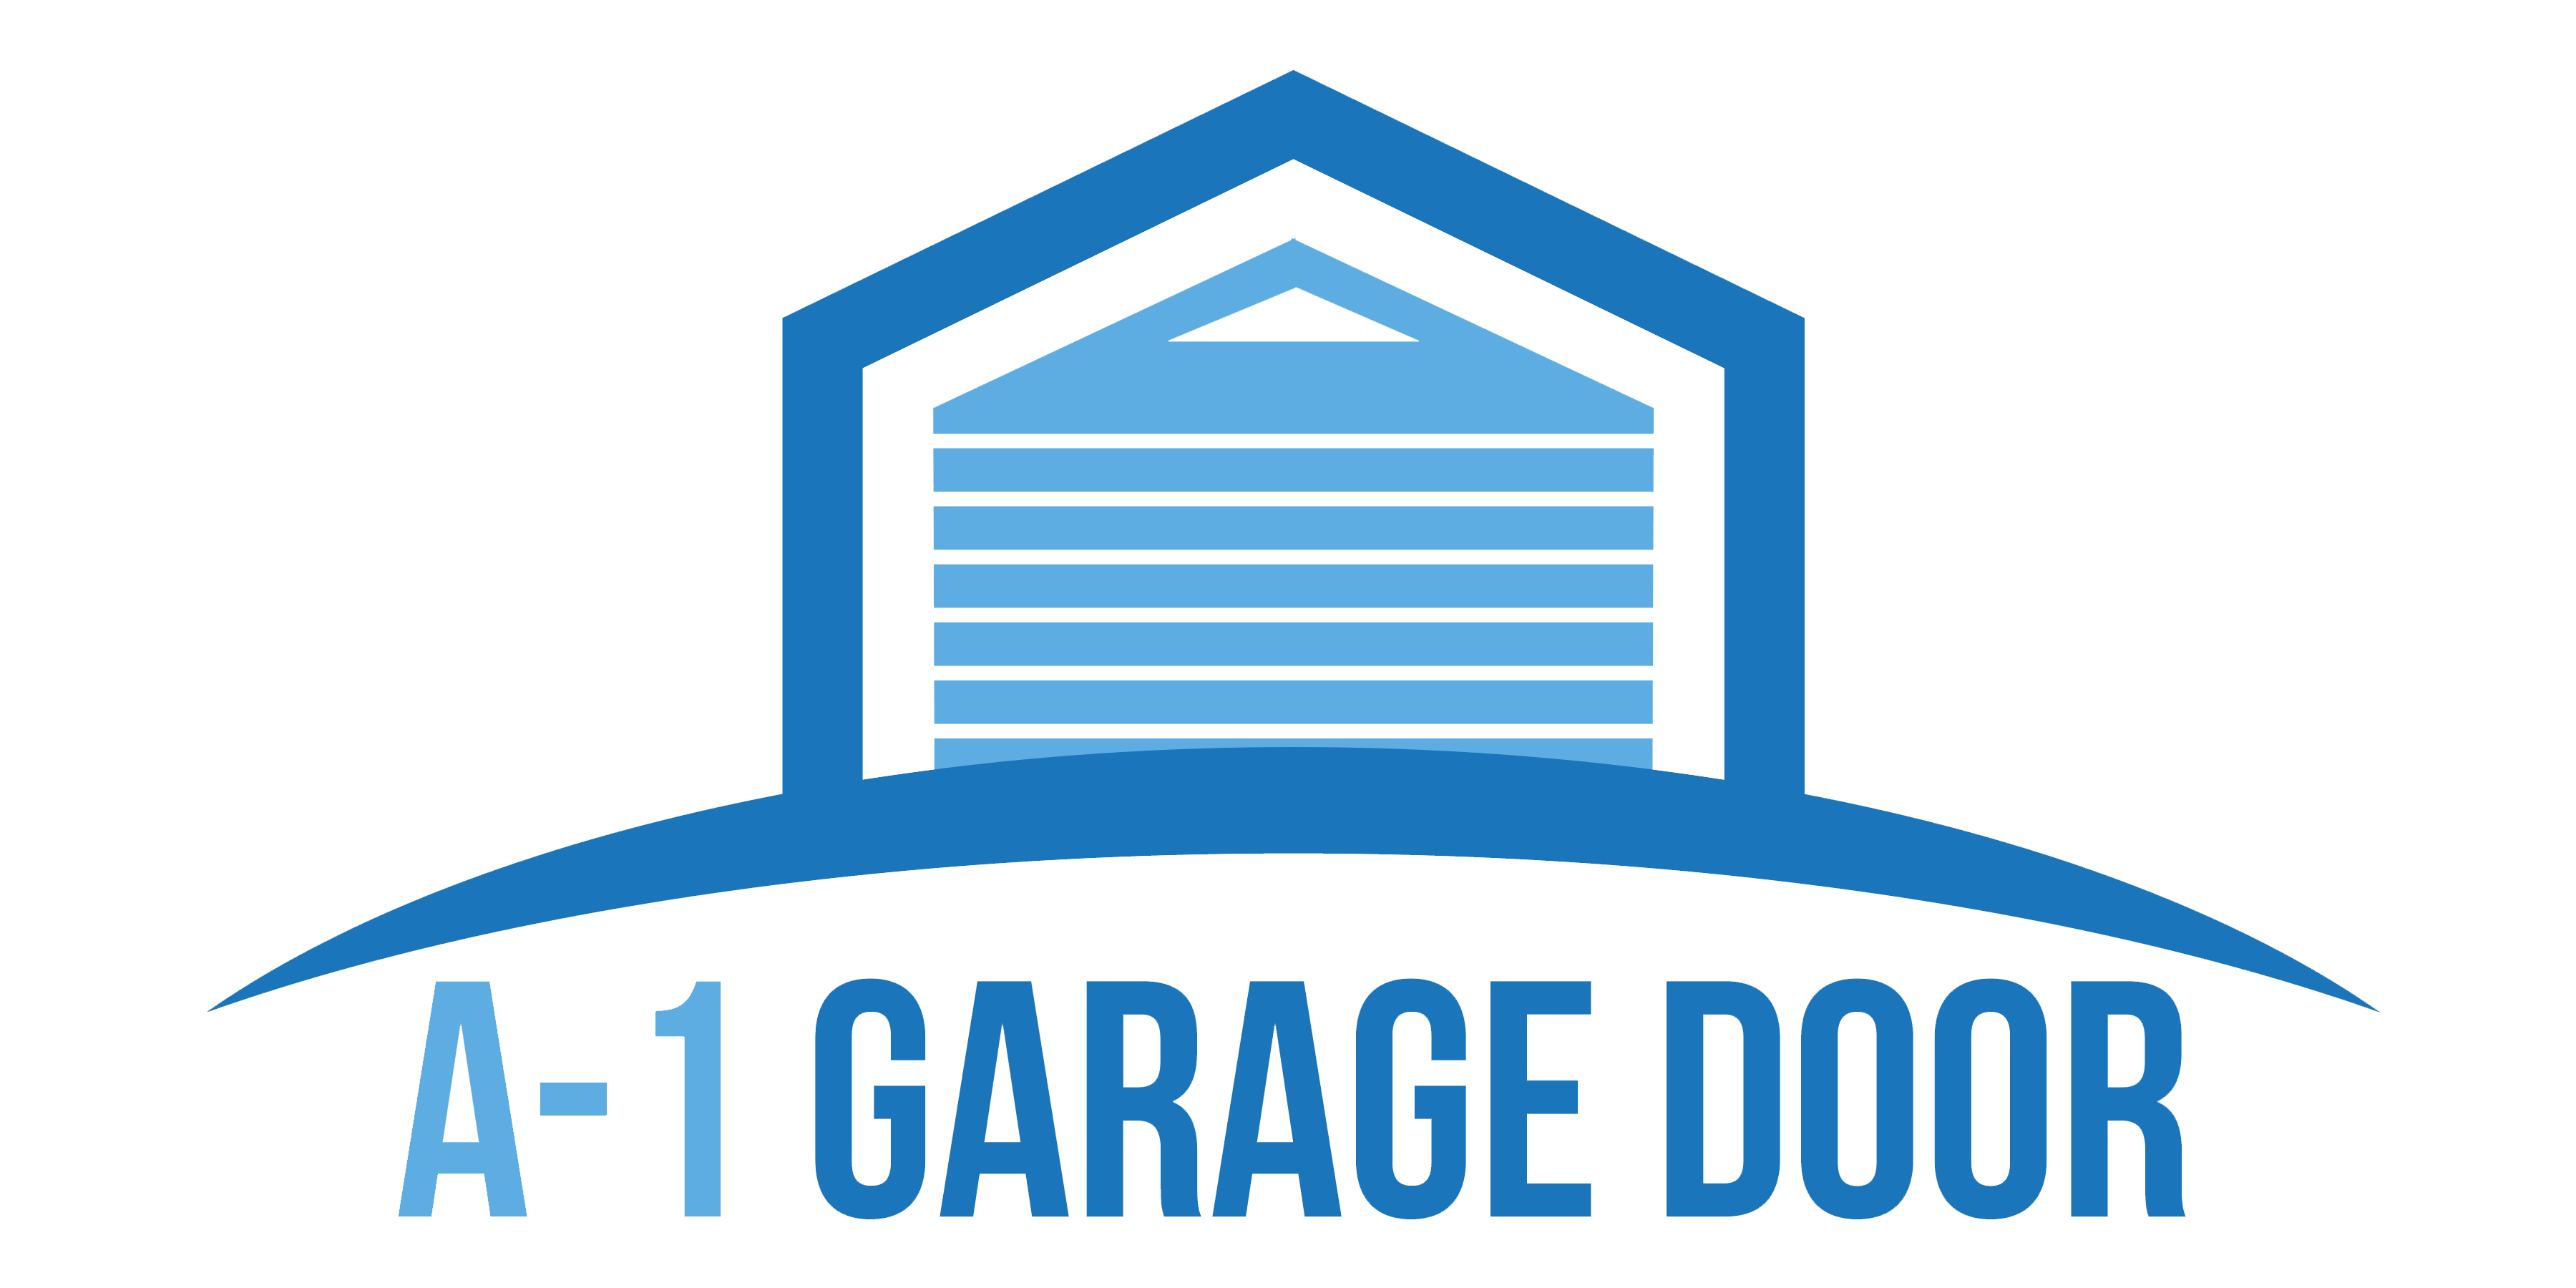 A1 Garage logo